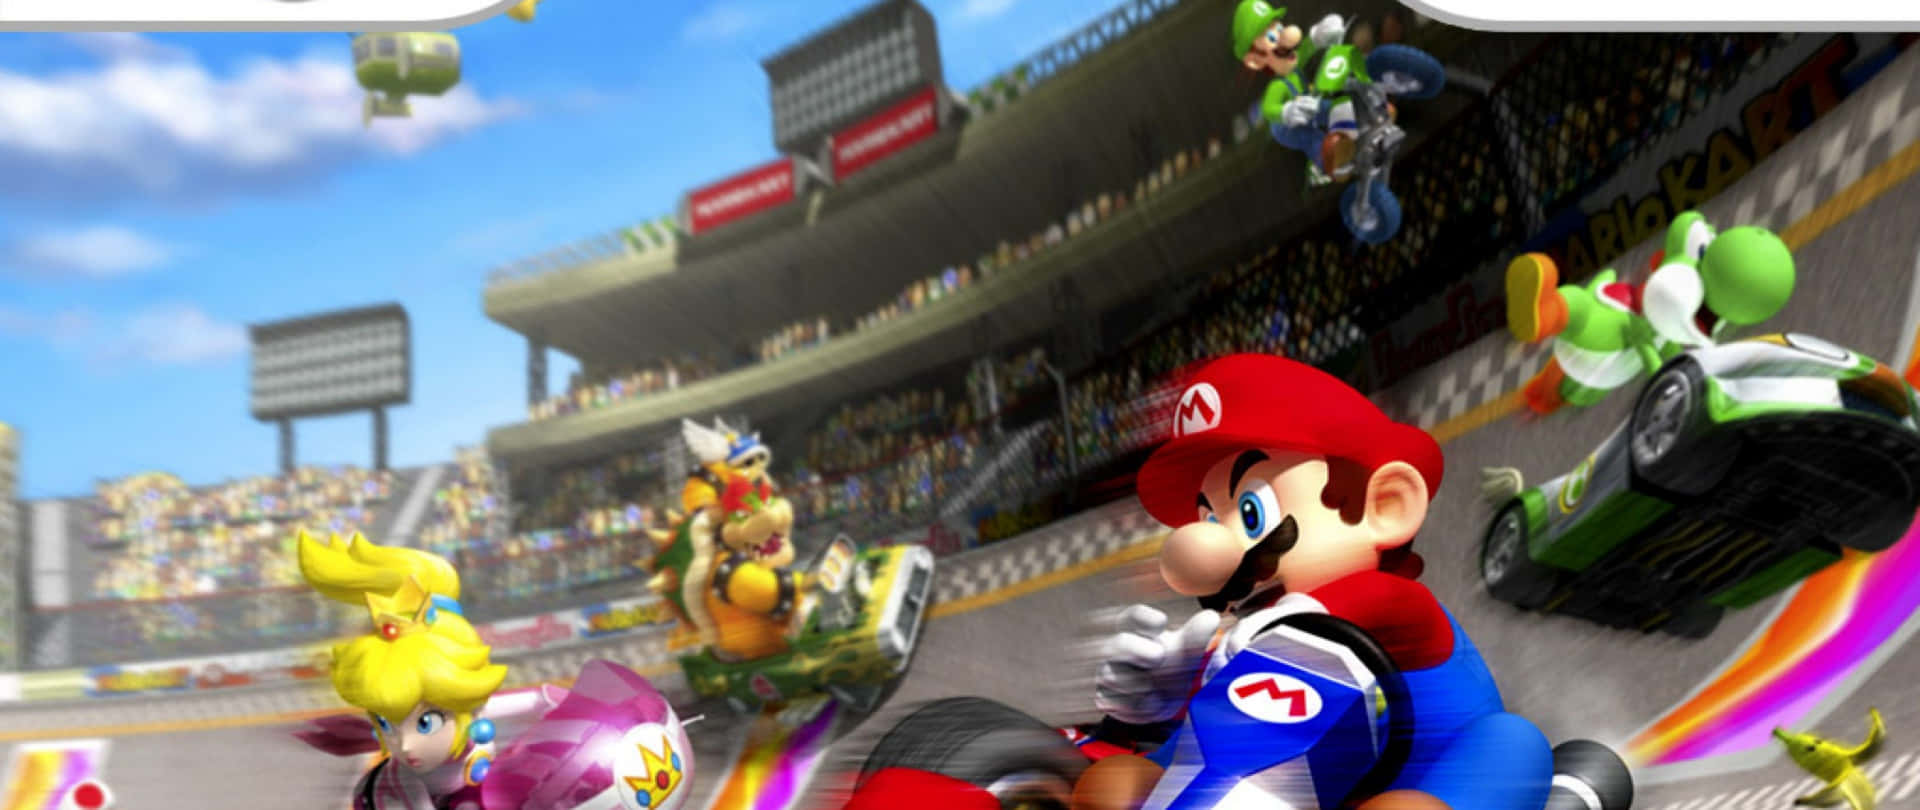 Spaßund Schnelligkeit! Mach Mit Beim Rennen Mit Mario Kart!